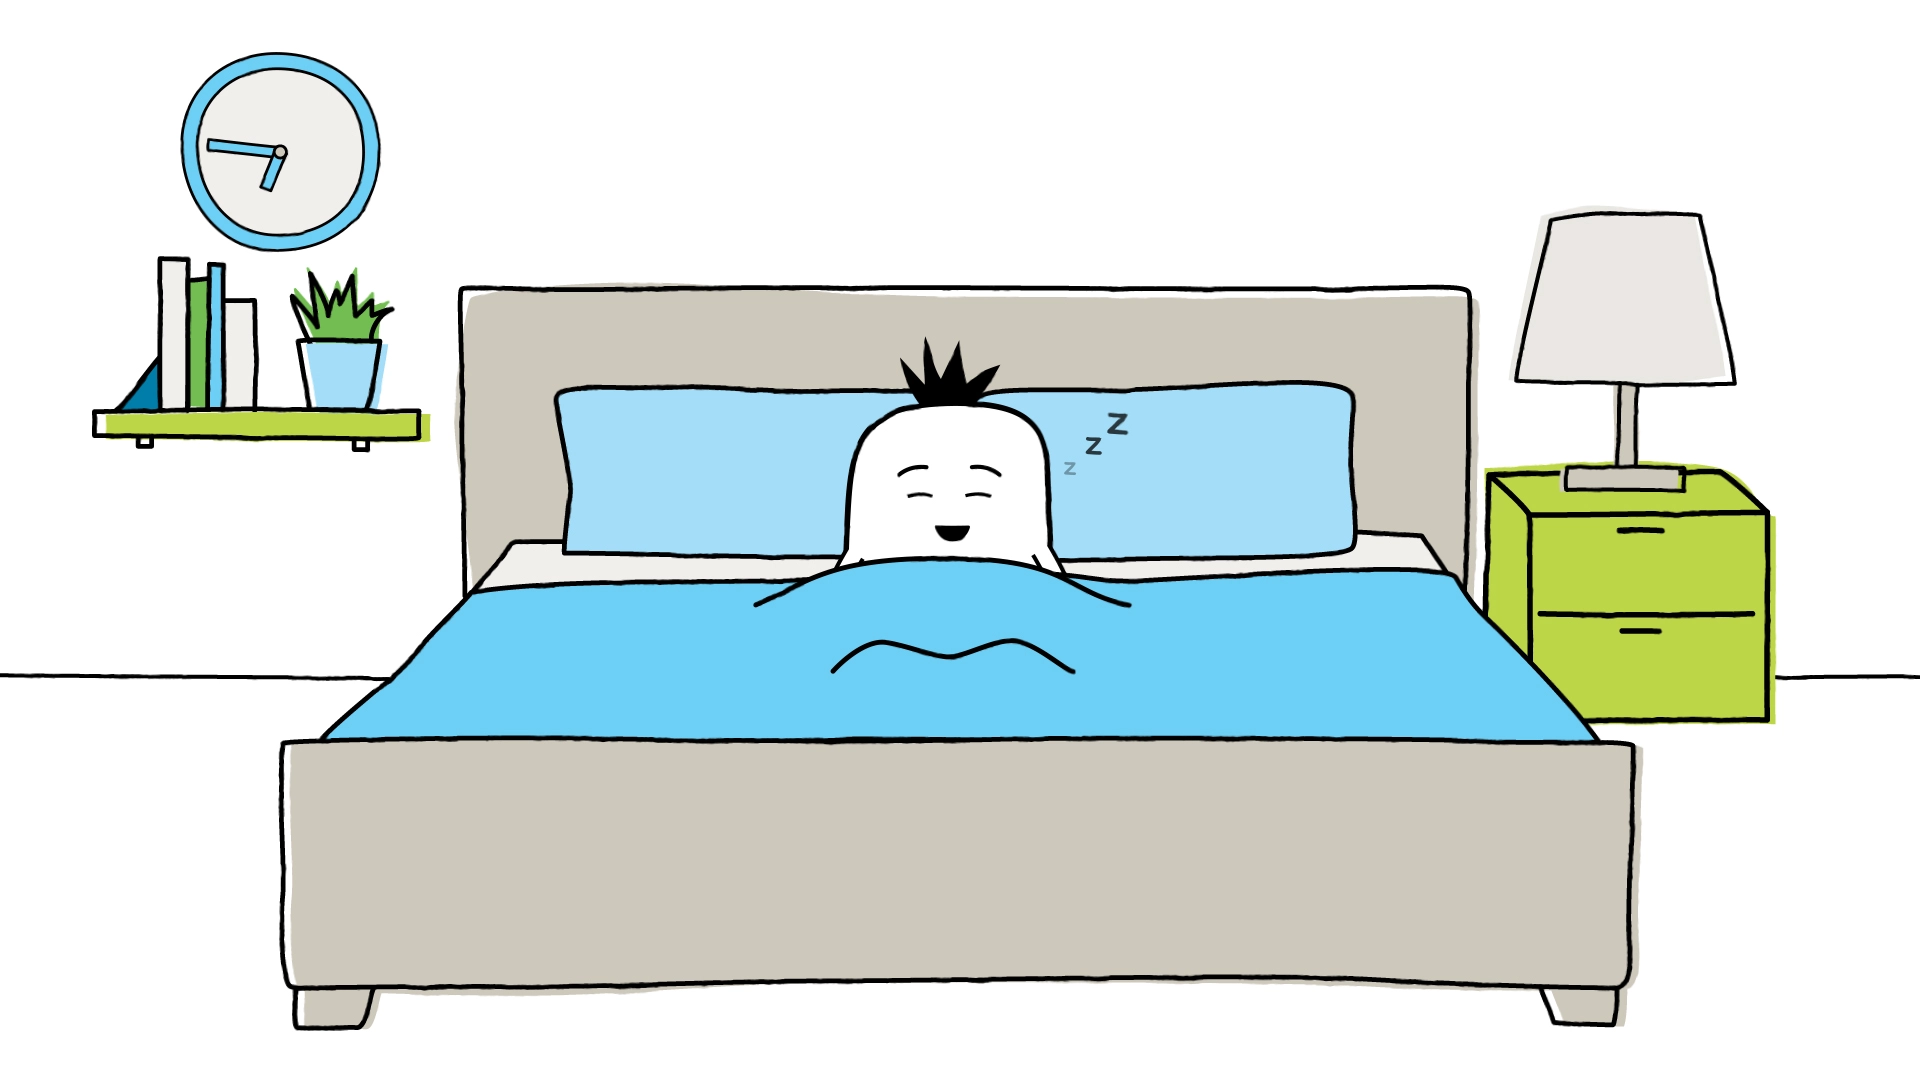 Benestar: Getting a Good Night’s Sleep